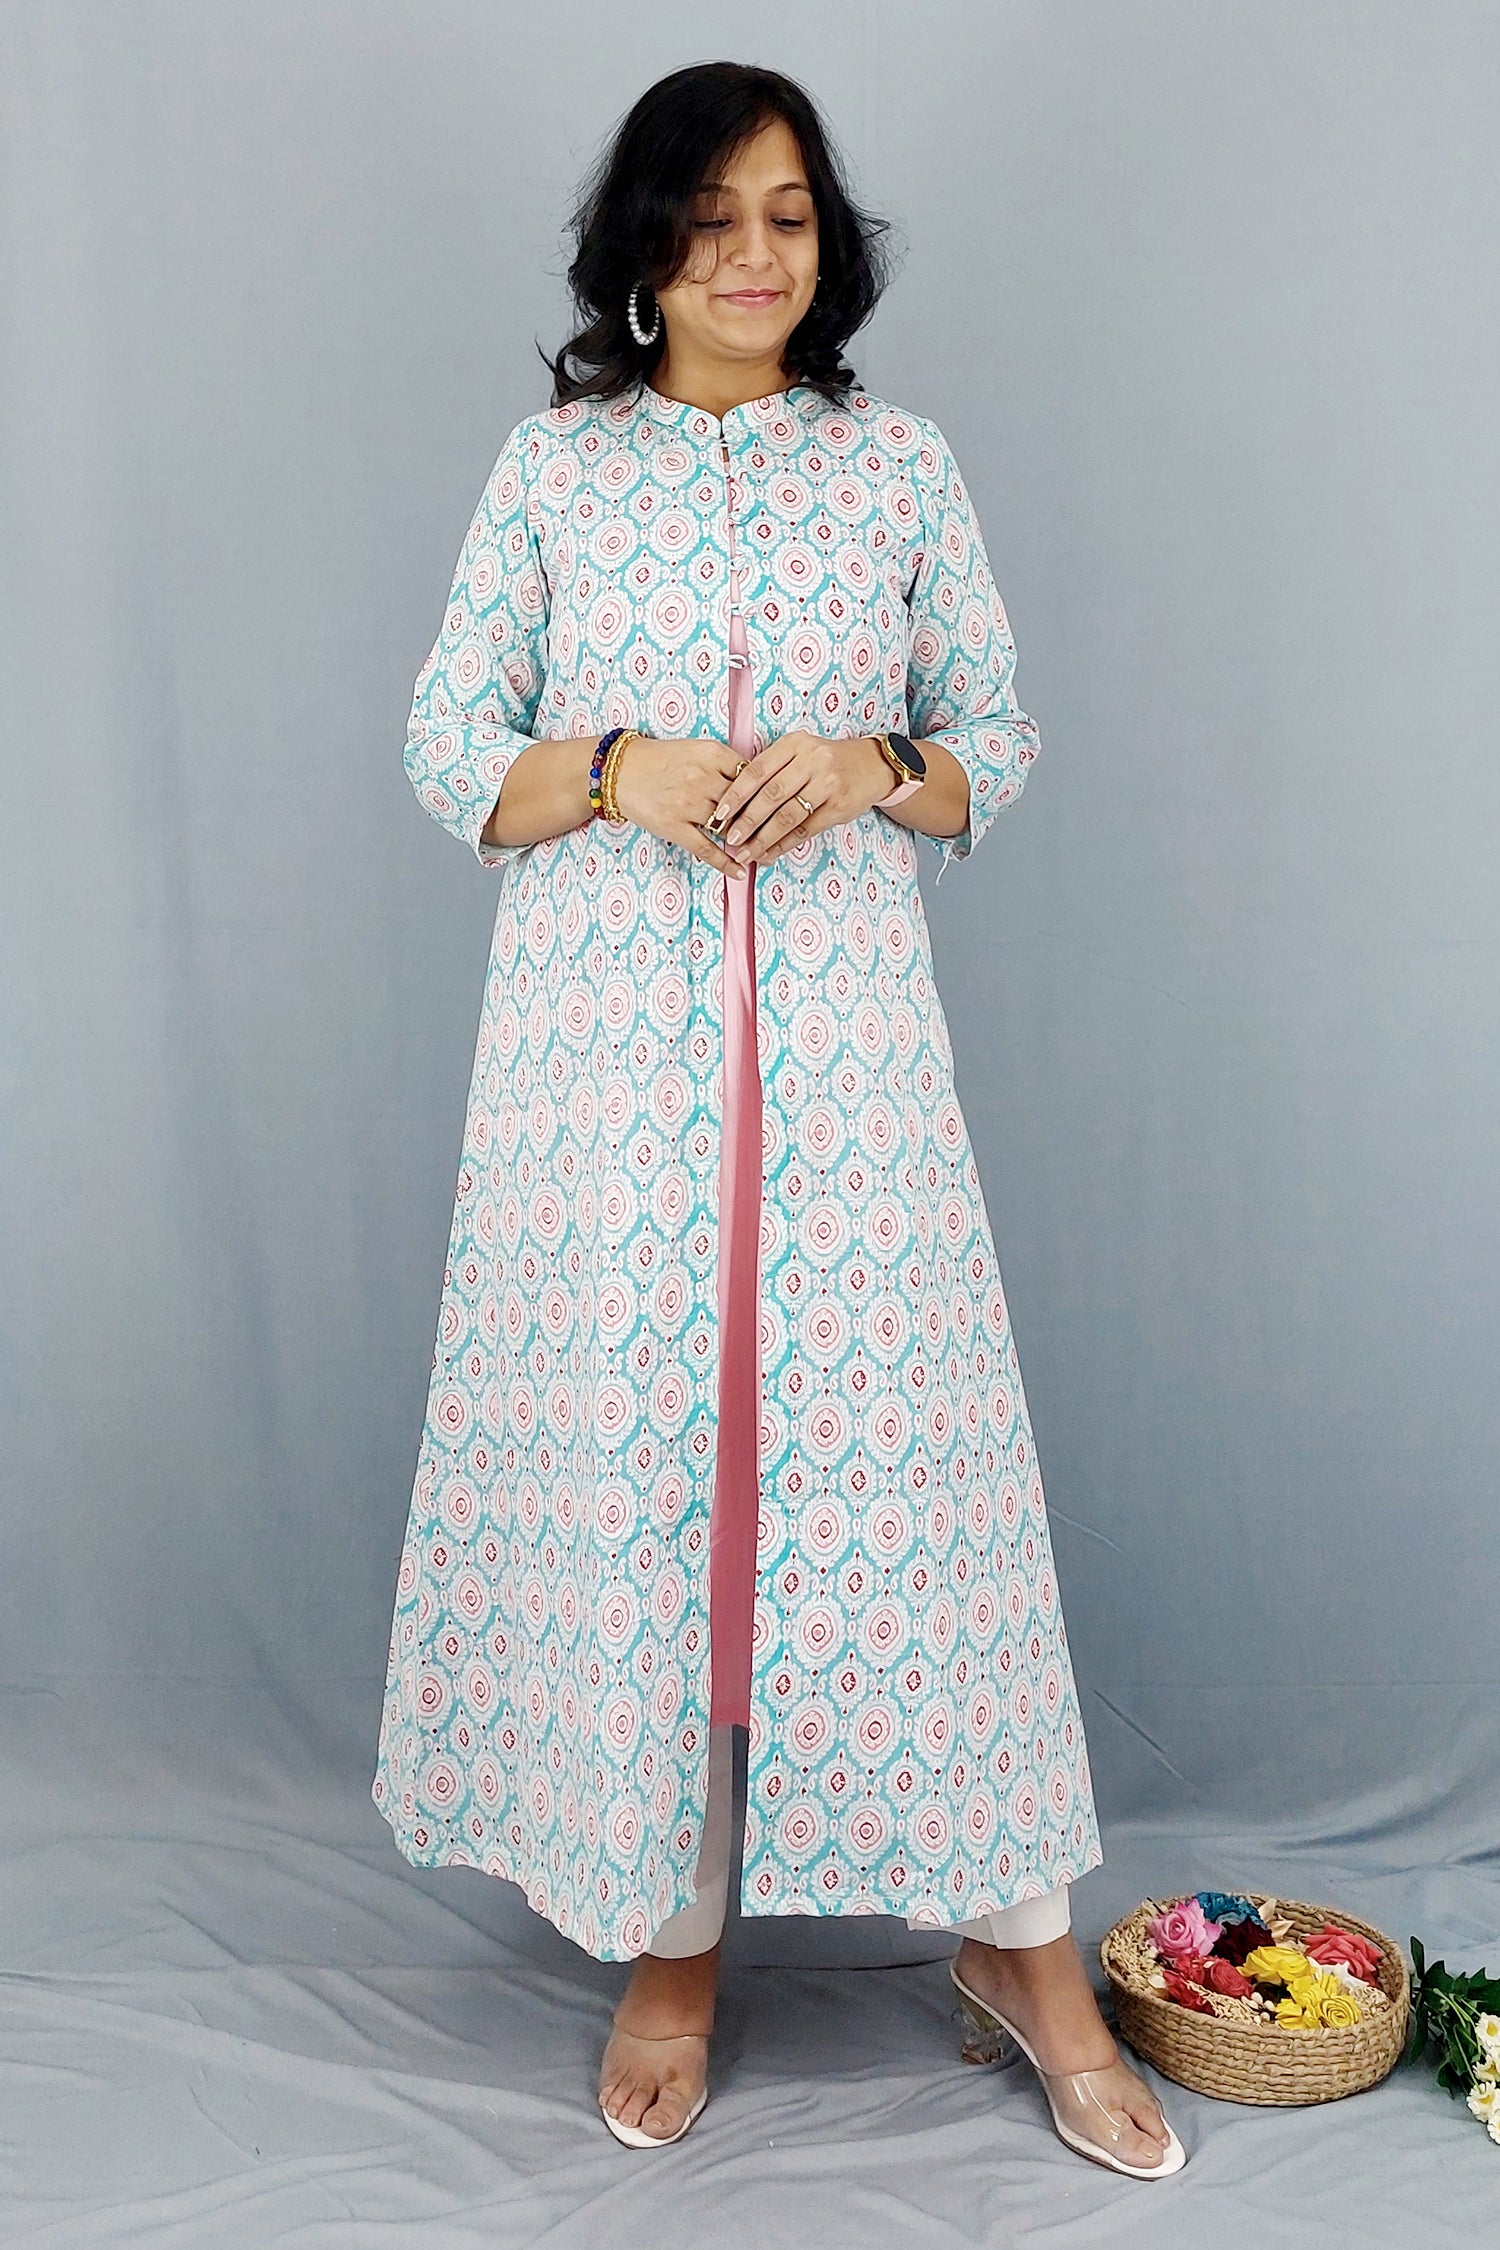 Dress cum Kurta with Printed Cotton Shrug- Set of 2 Dress Dress cum Kurta with Printed Cotton Shrug- Set of 2 Dress 